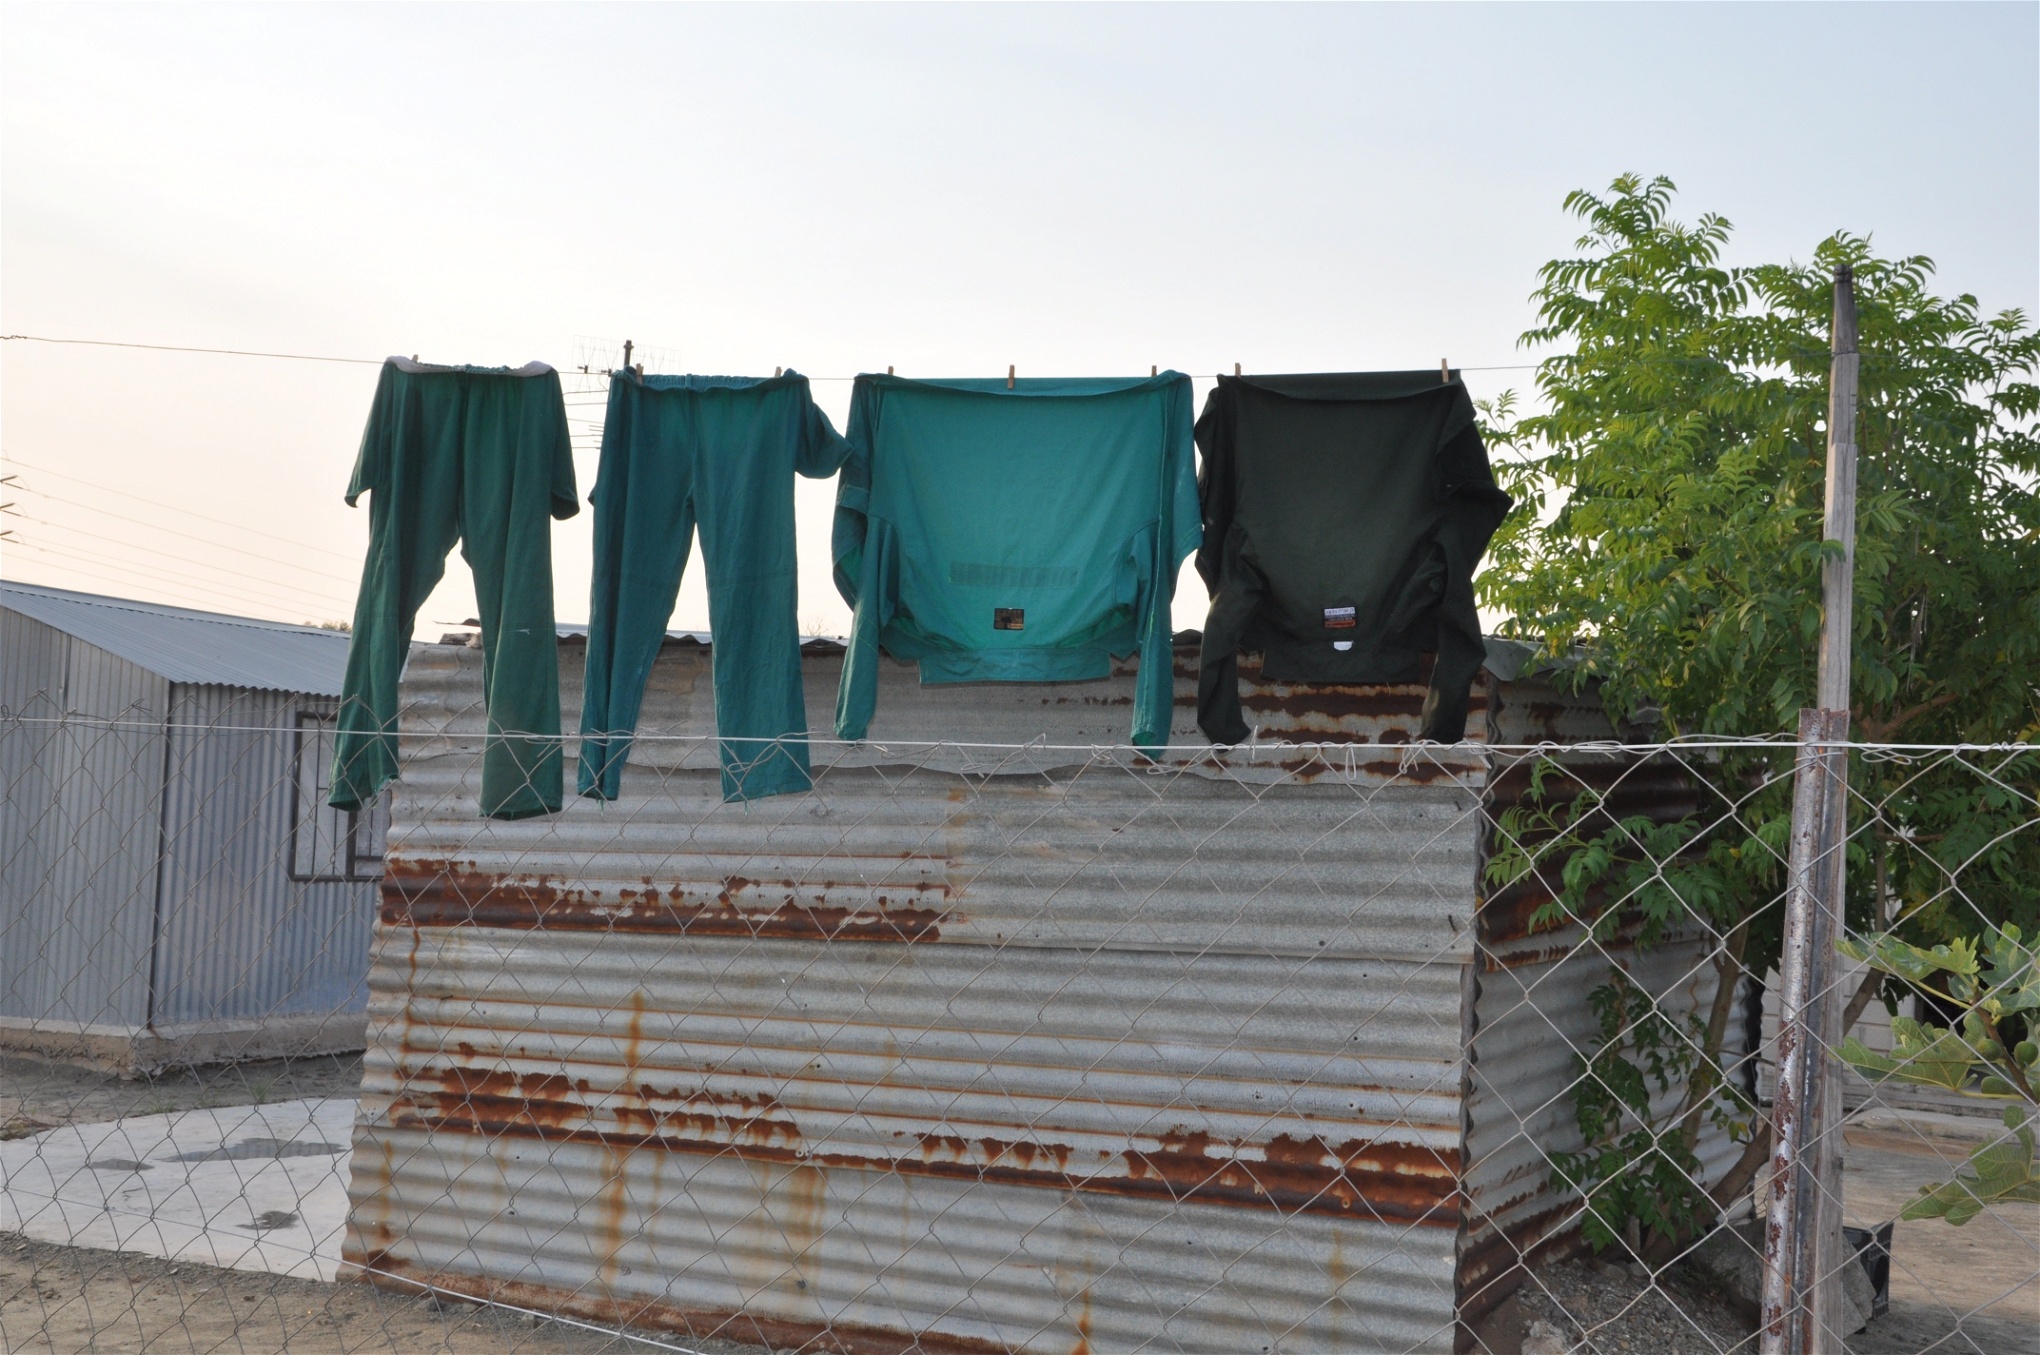 Mellan plåtskjulen i den informella bosättningen Won­der­kop hänger Lonmins gröna arbetsoveraller på tork.